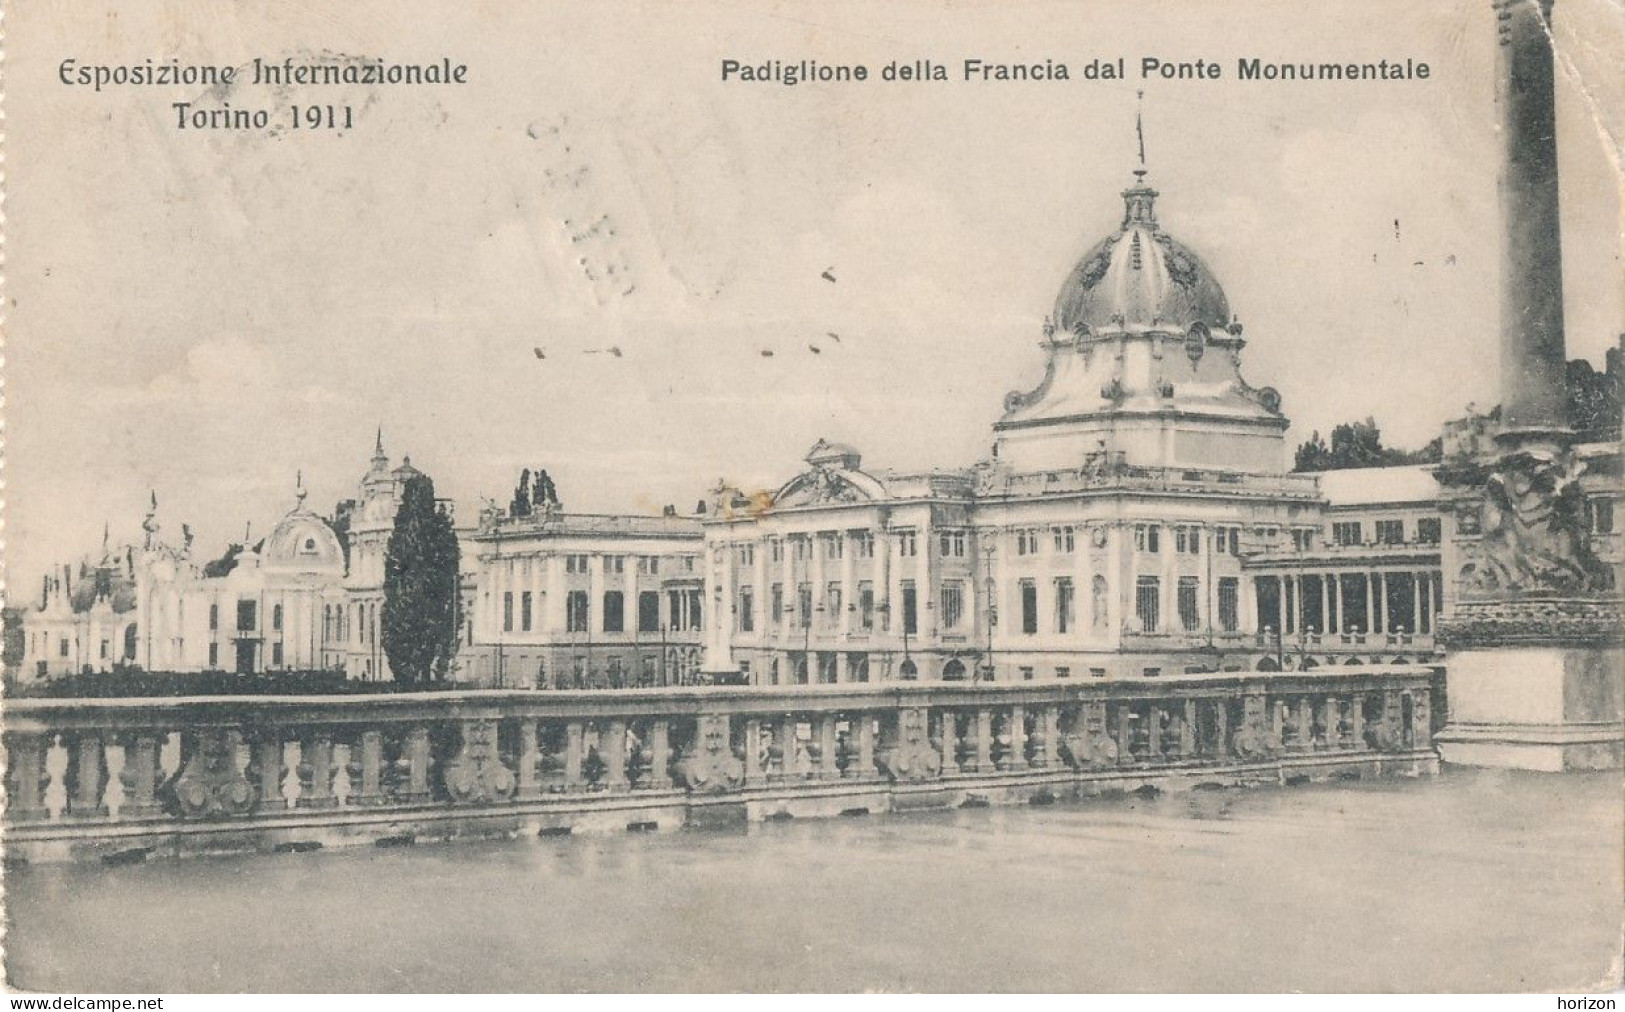 2f.256  TORINO - Esposizione Internazionale 1911 - Padiglione Della Francia Dal Ponte Monumentale - 1911 - Expositions